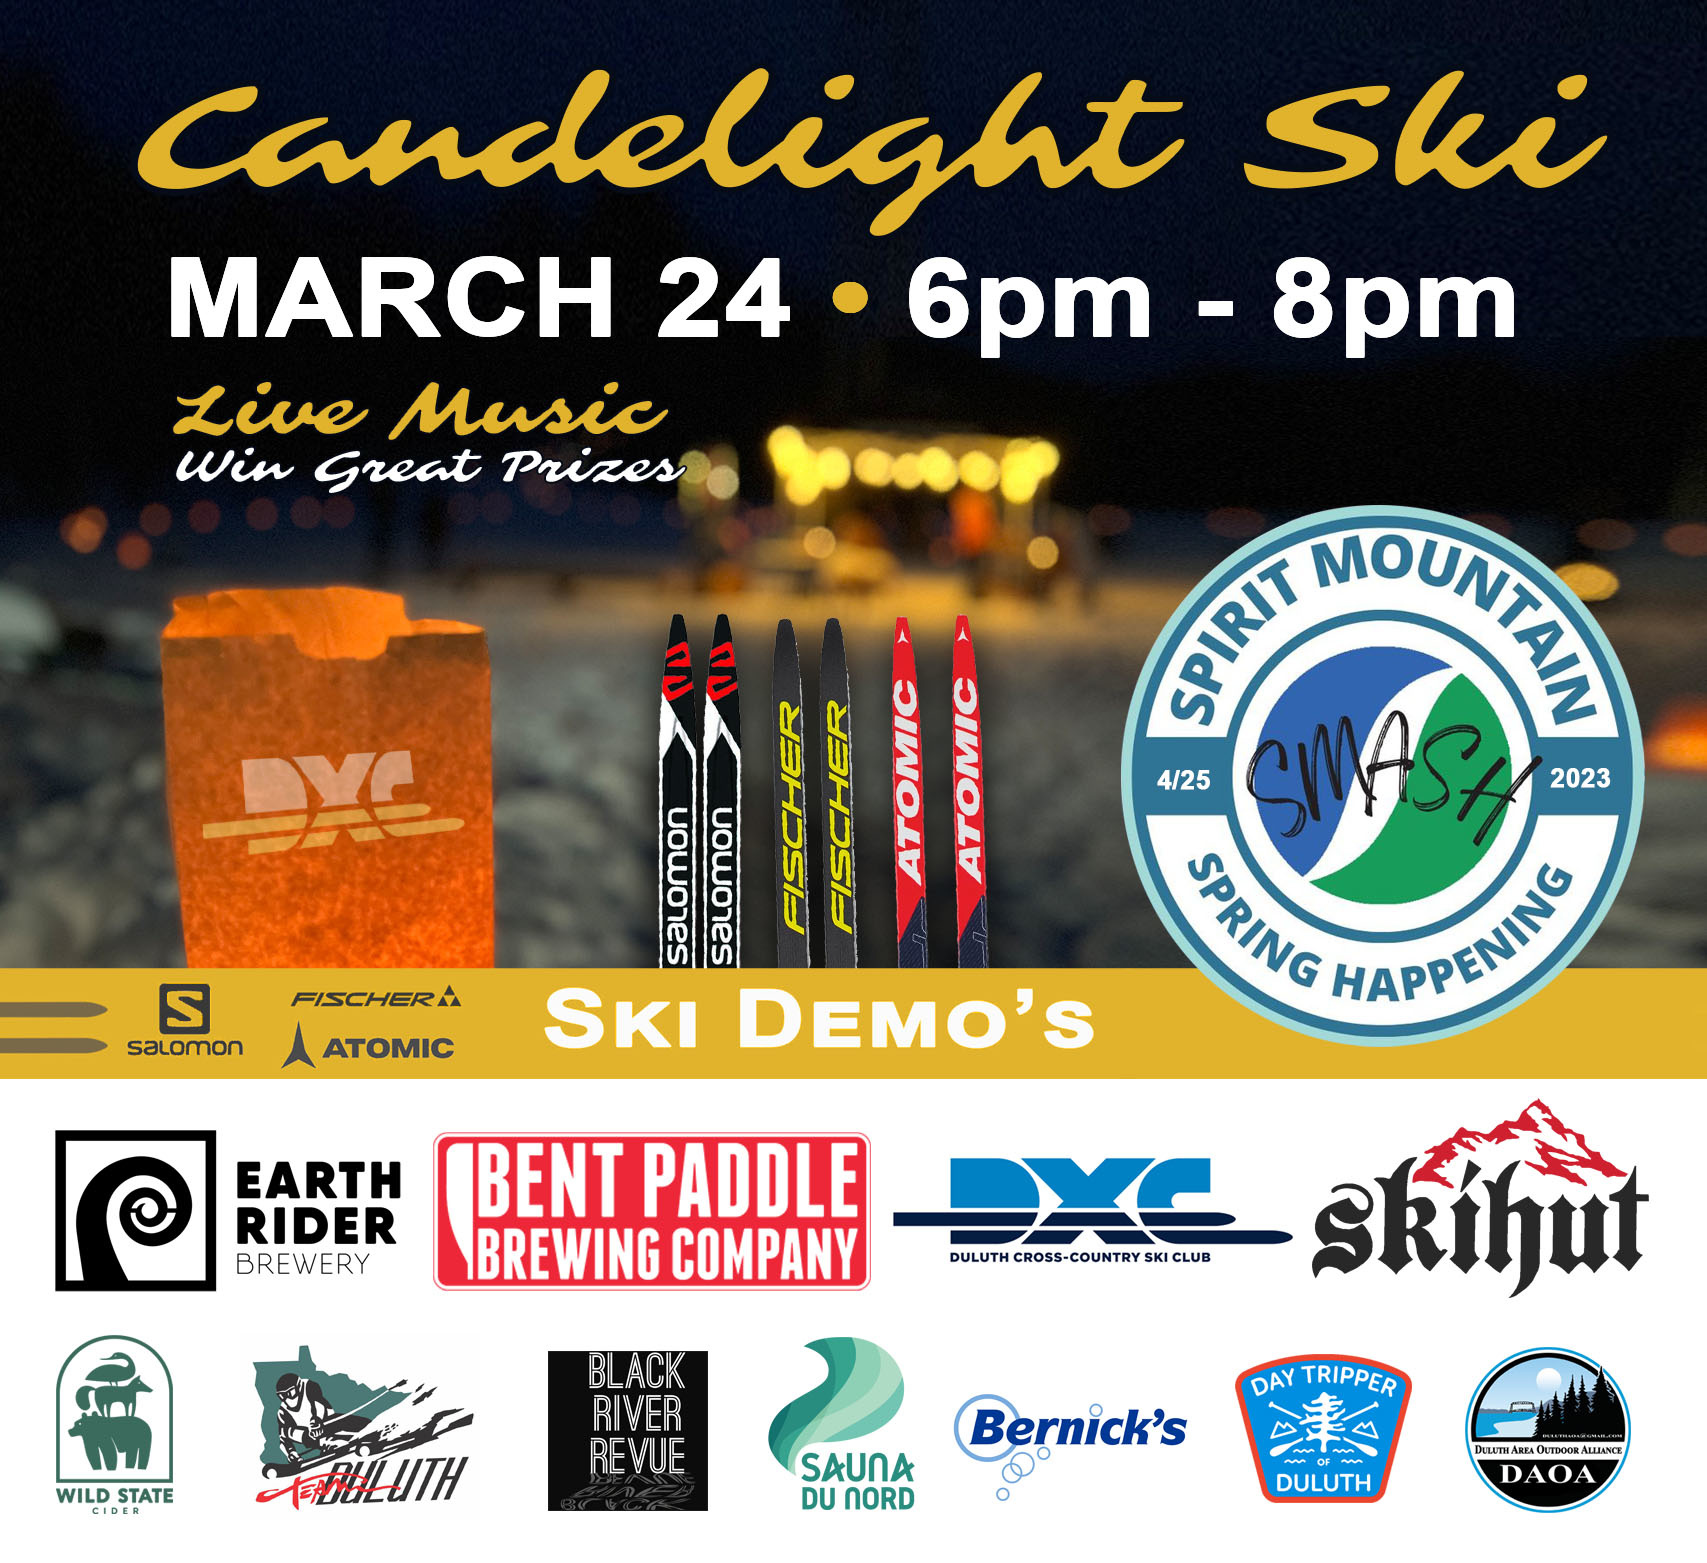 SMASH DXC Candlelight Ski